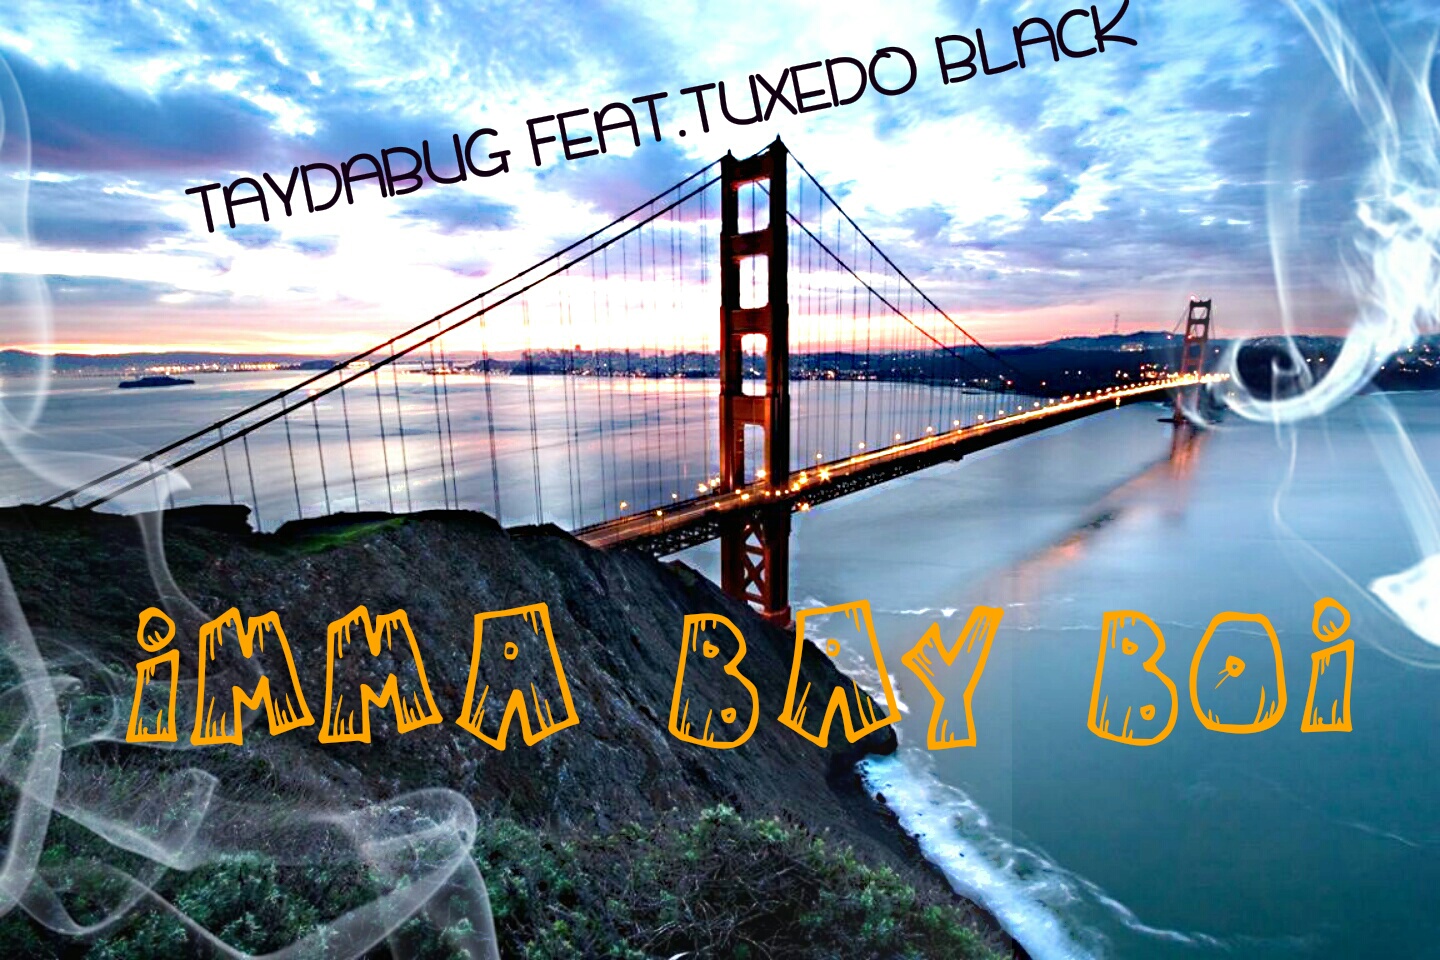 Taydabug featuring Tuxedo Black - "I'm A Bay Boy" (Producer: Indecent The Slapmaster)